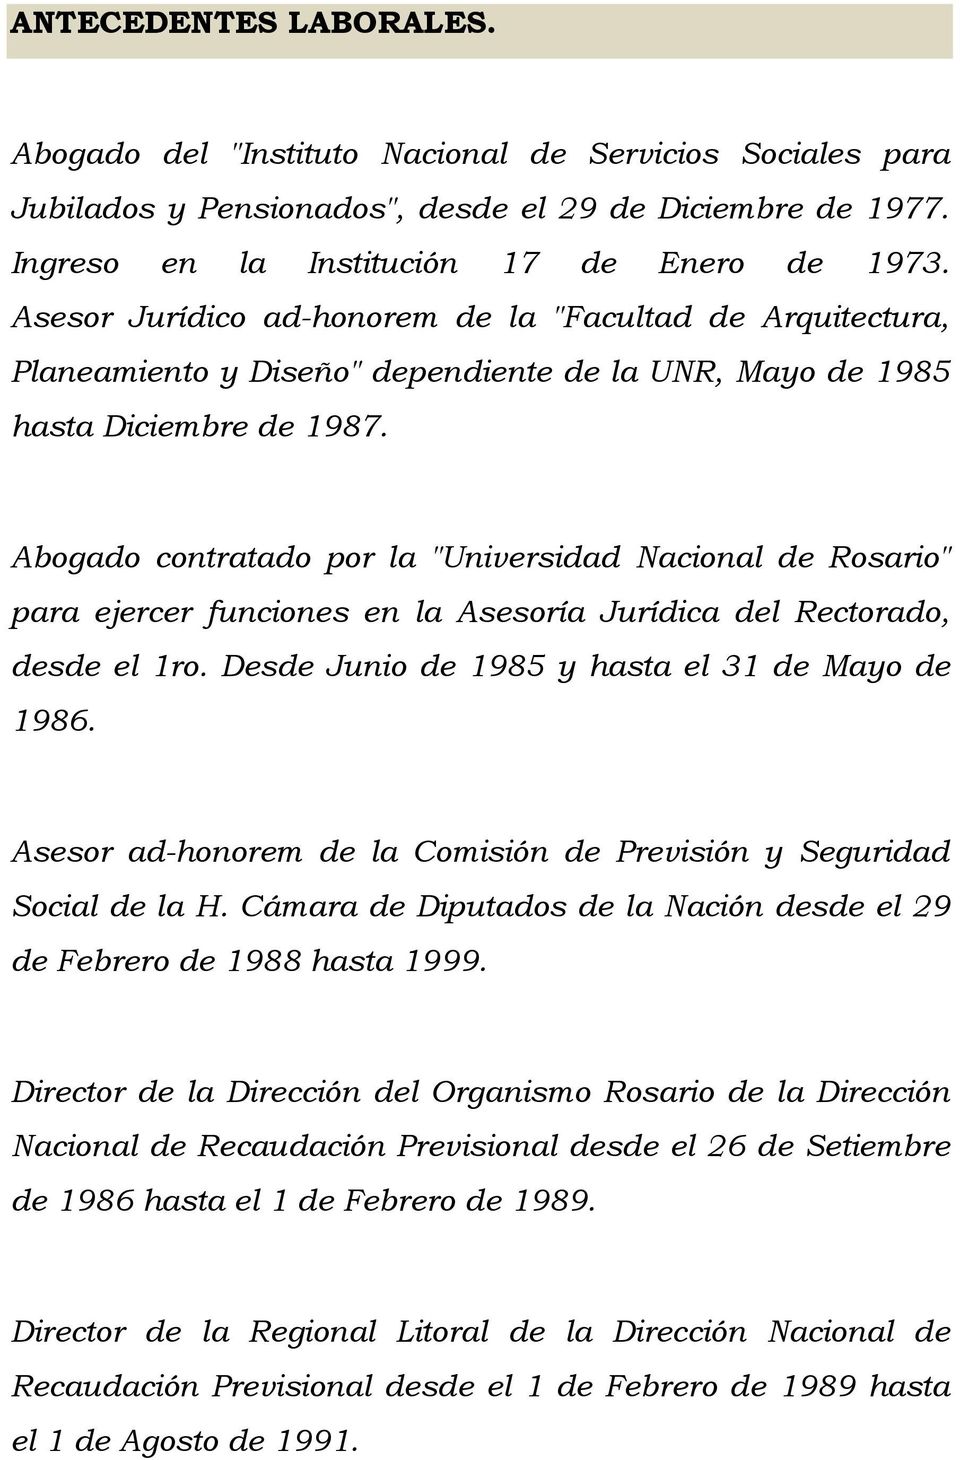 Abogado contratado por la "Universidad Nacional de Rosario" para ejercer funciones en la Asesoría Jurídica del Rectorado, desde el 1ro. Desde Junio de 1985 y hasta el 31 de Mayo de 1986.